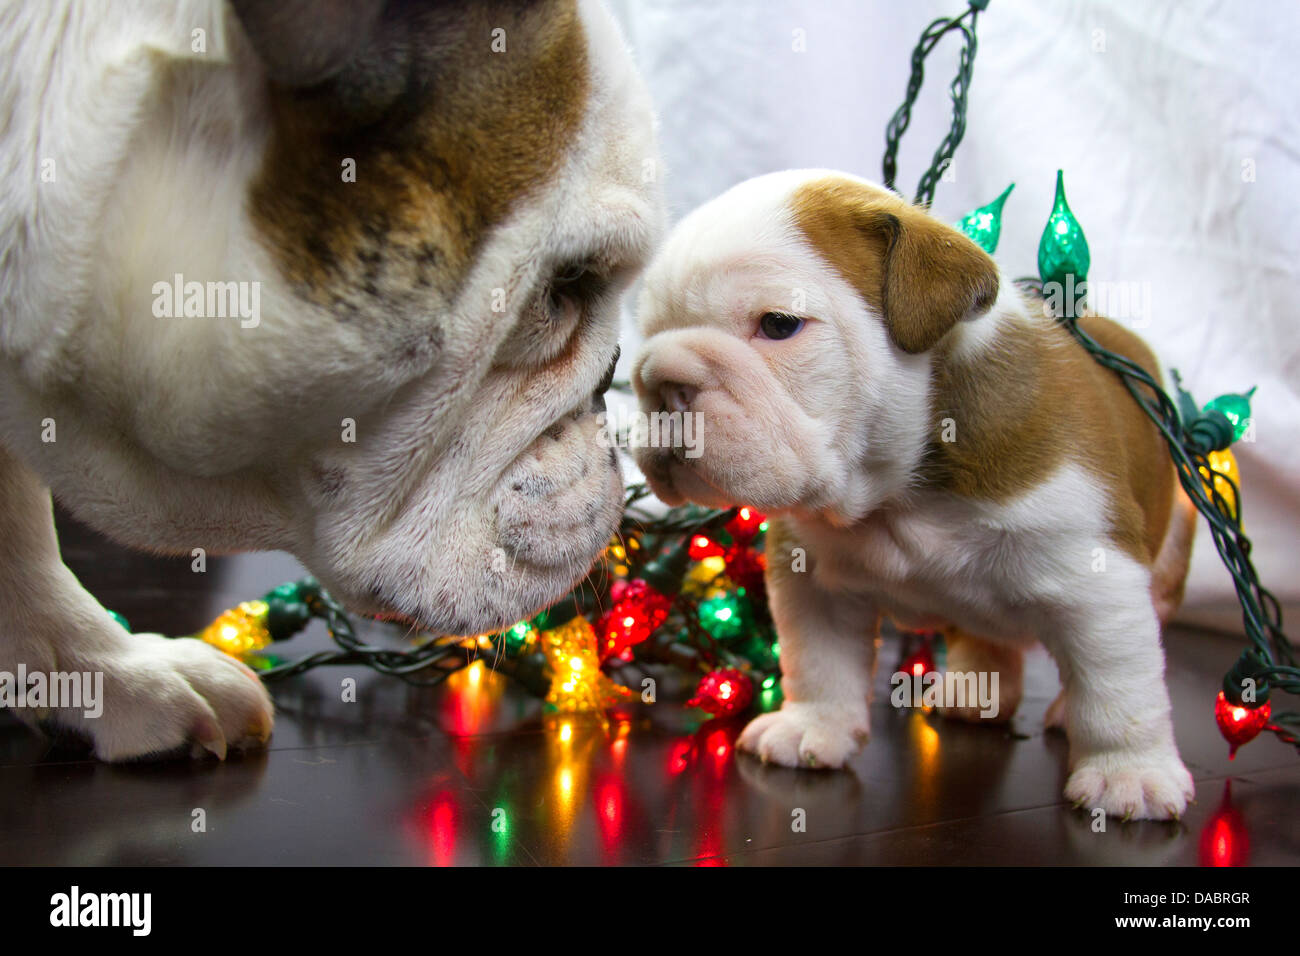 Zwei englische Bulldoggen eingehüllt in Weihnachtsbeleuchtung auf einen hölzernen Fußboden Stockfoto